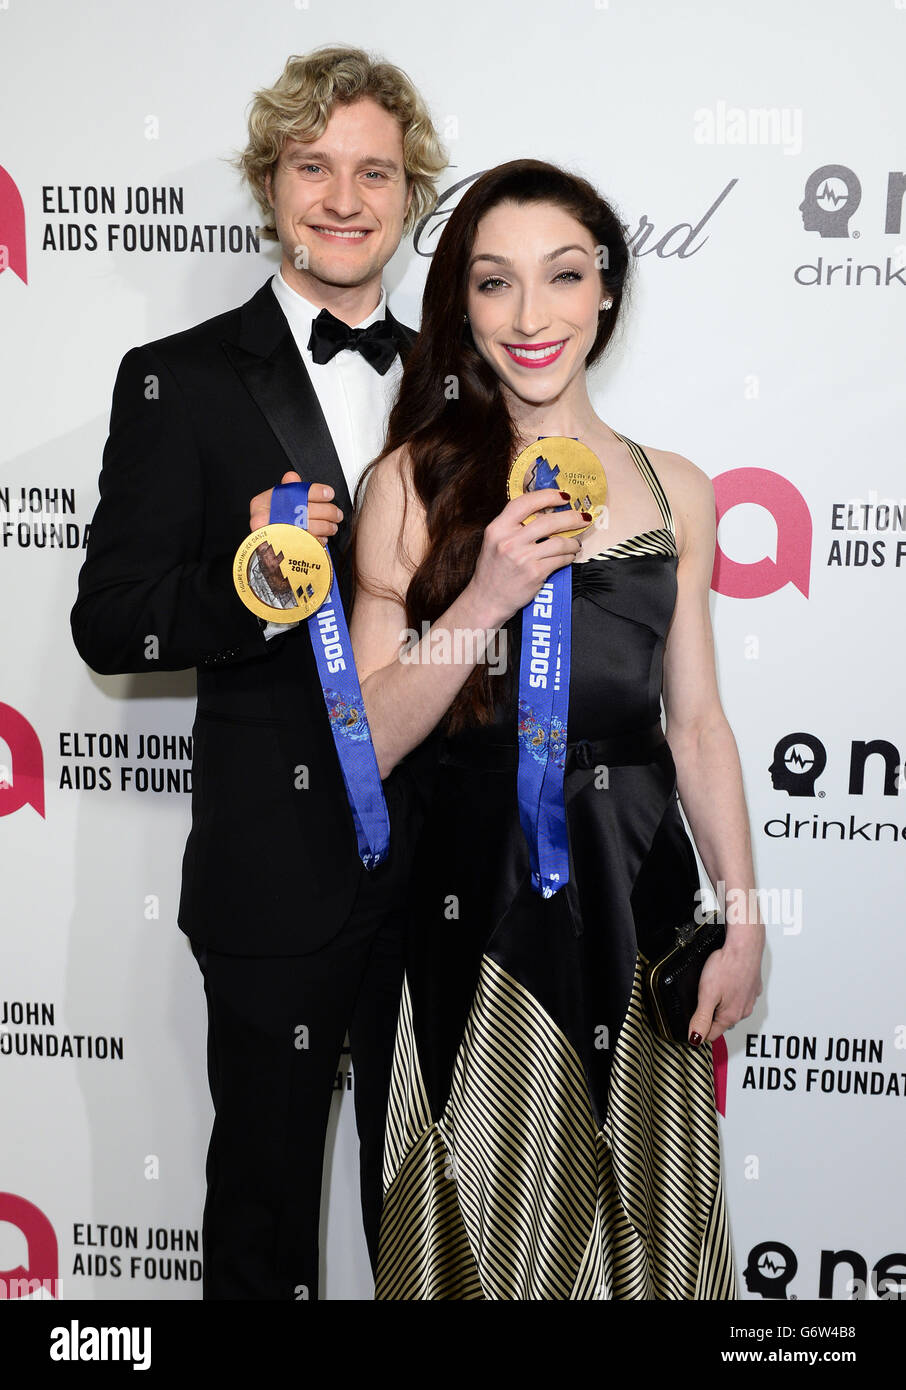 Meryl Davis und Charlie White kommen zur 22. Jährlichen Academy Awards Viewing Party der Elton John AIDS Foundation im West Hollywood Park in Los Angeles. Stockfoto